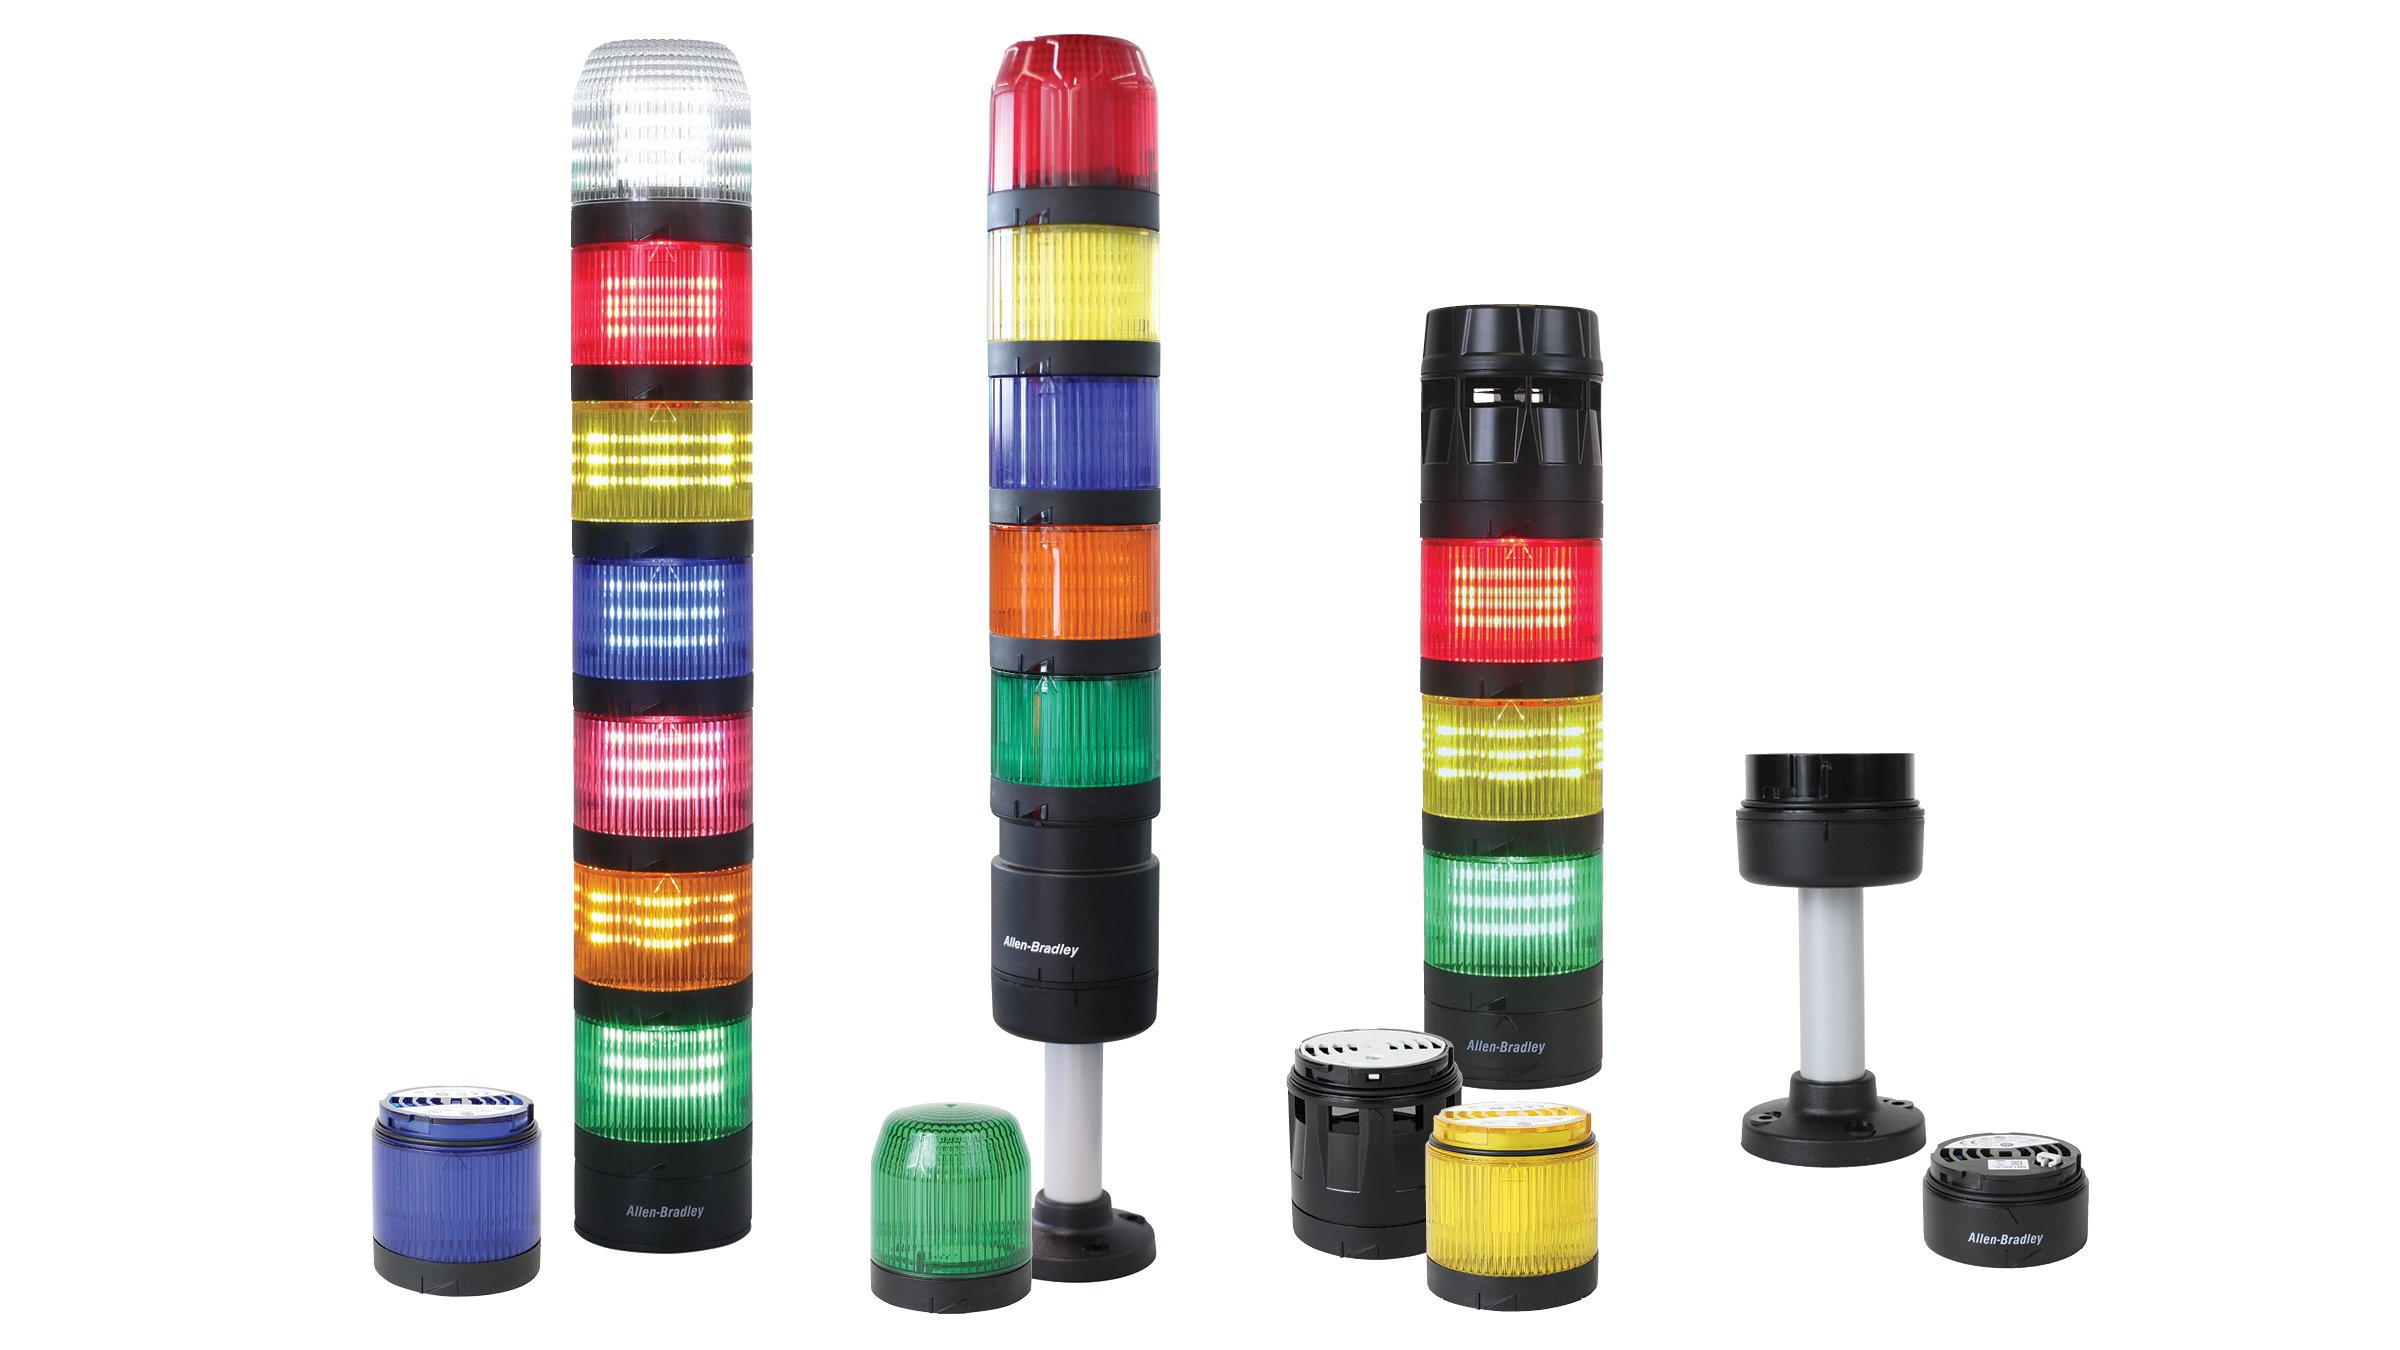 Différents modules lumineux multicolores représentés empilés et individuellement, avec des capuchons noirs, un module d’alarme et des socles de montage